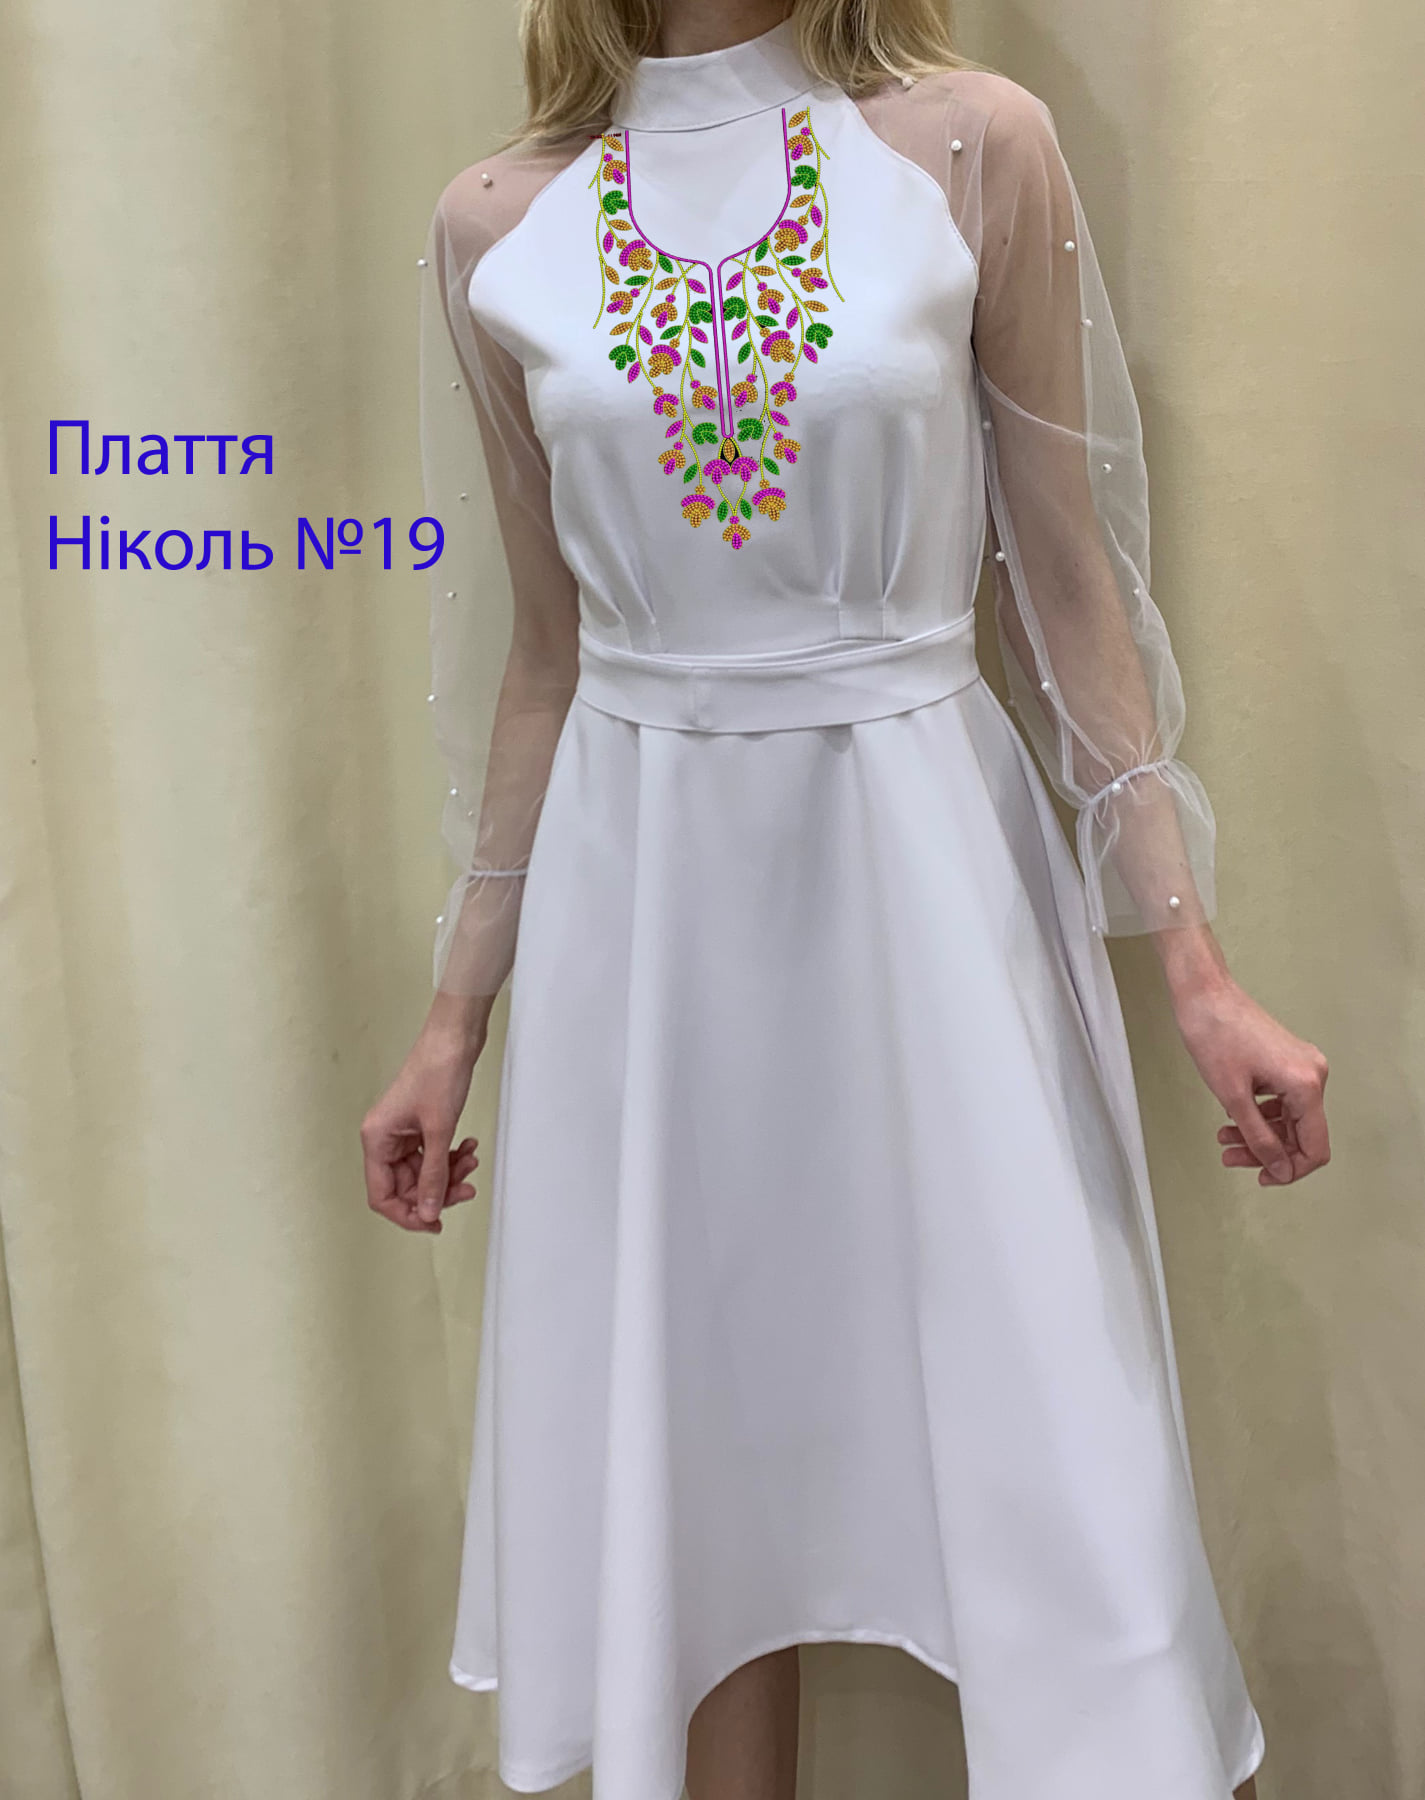 Пошита жіноча сукня для вишивки Ніколь №19